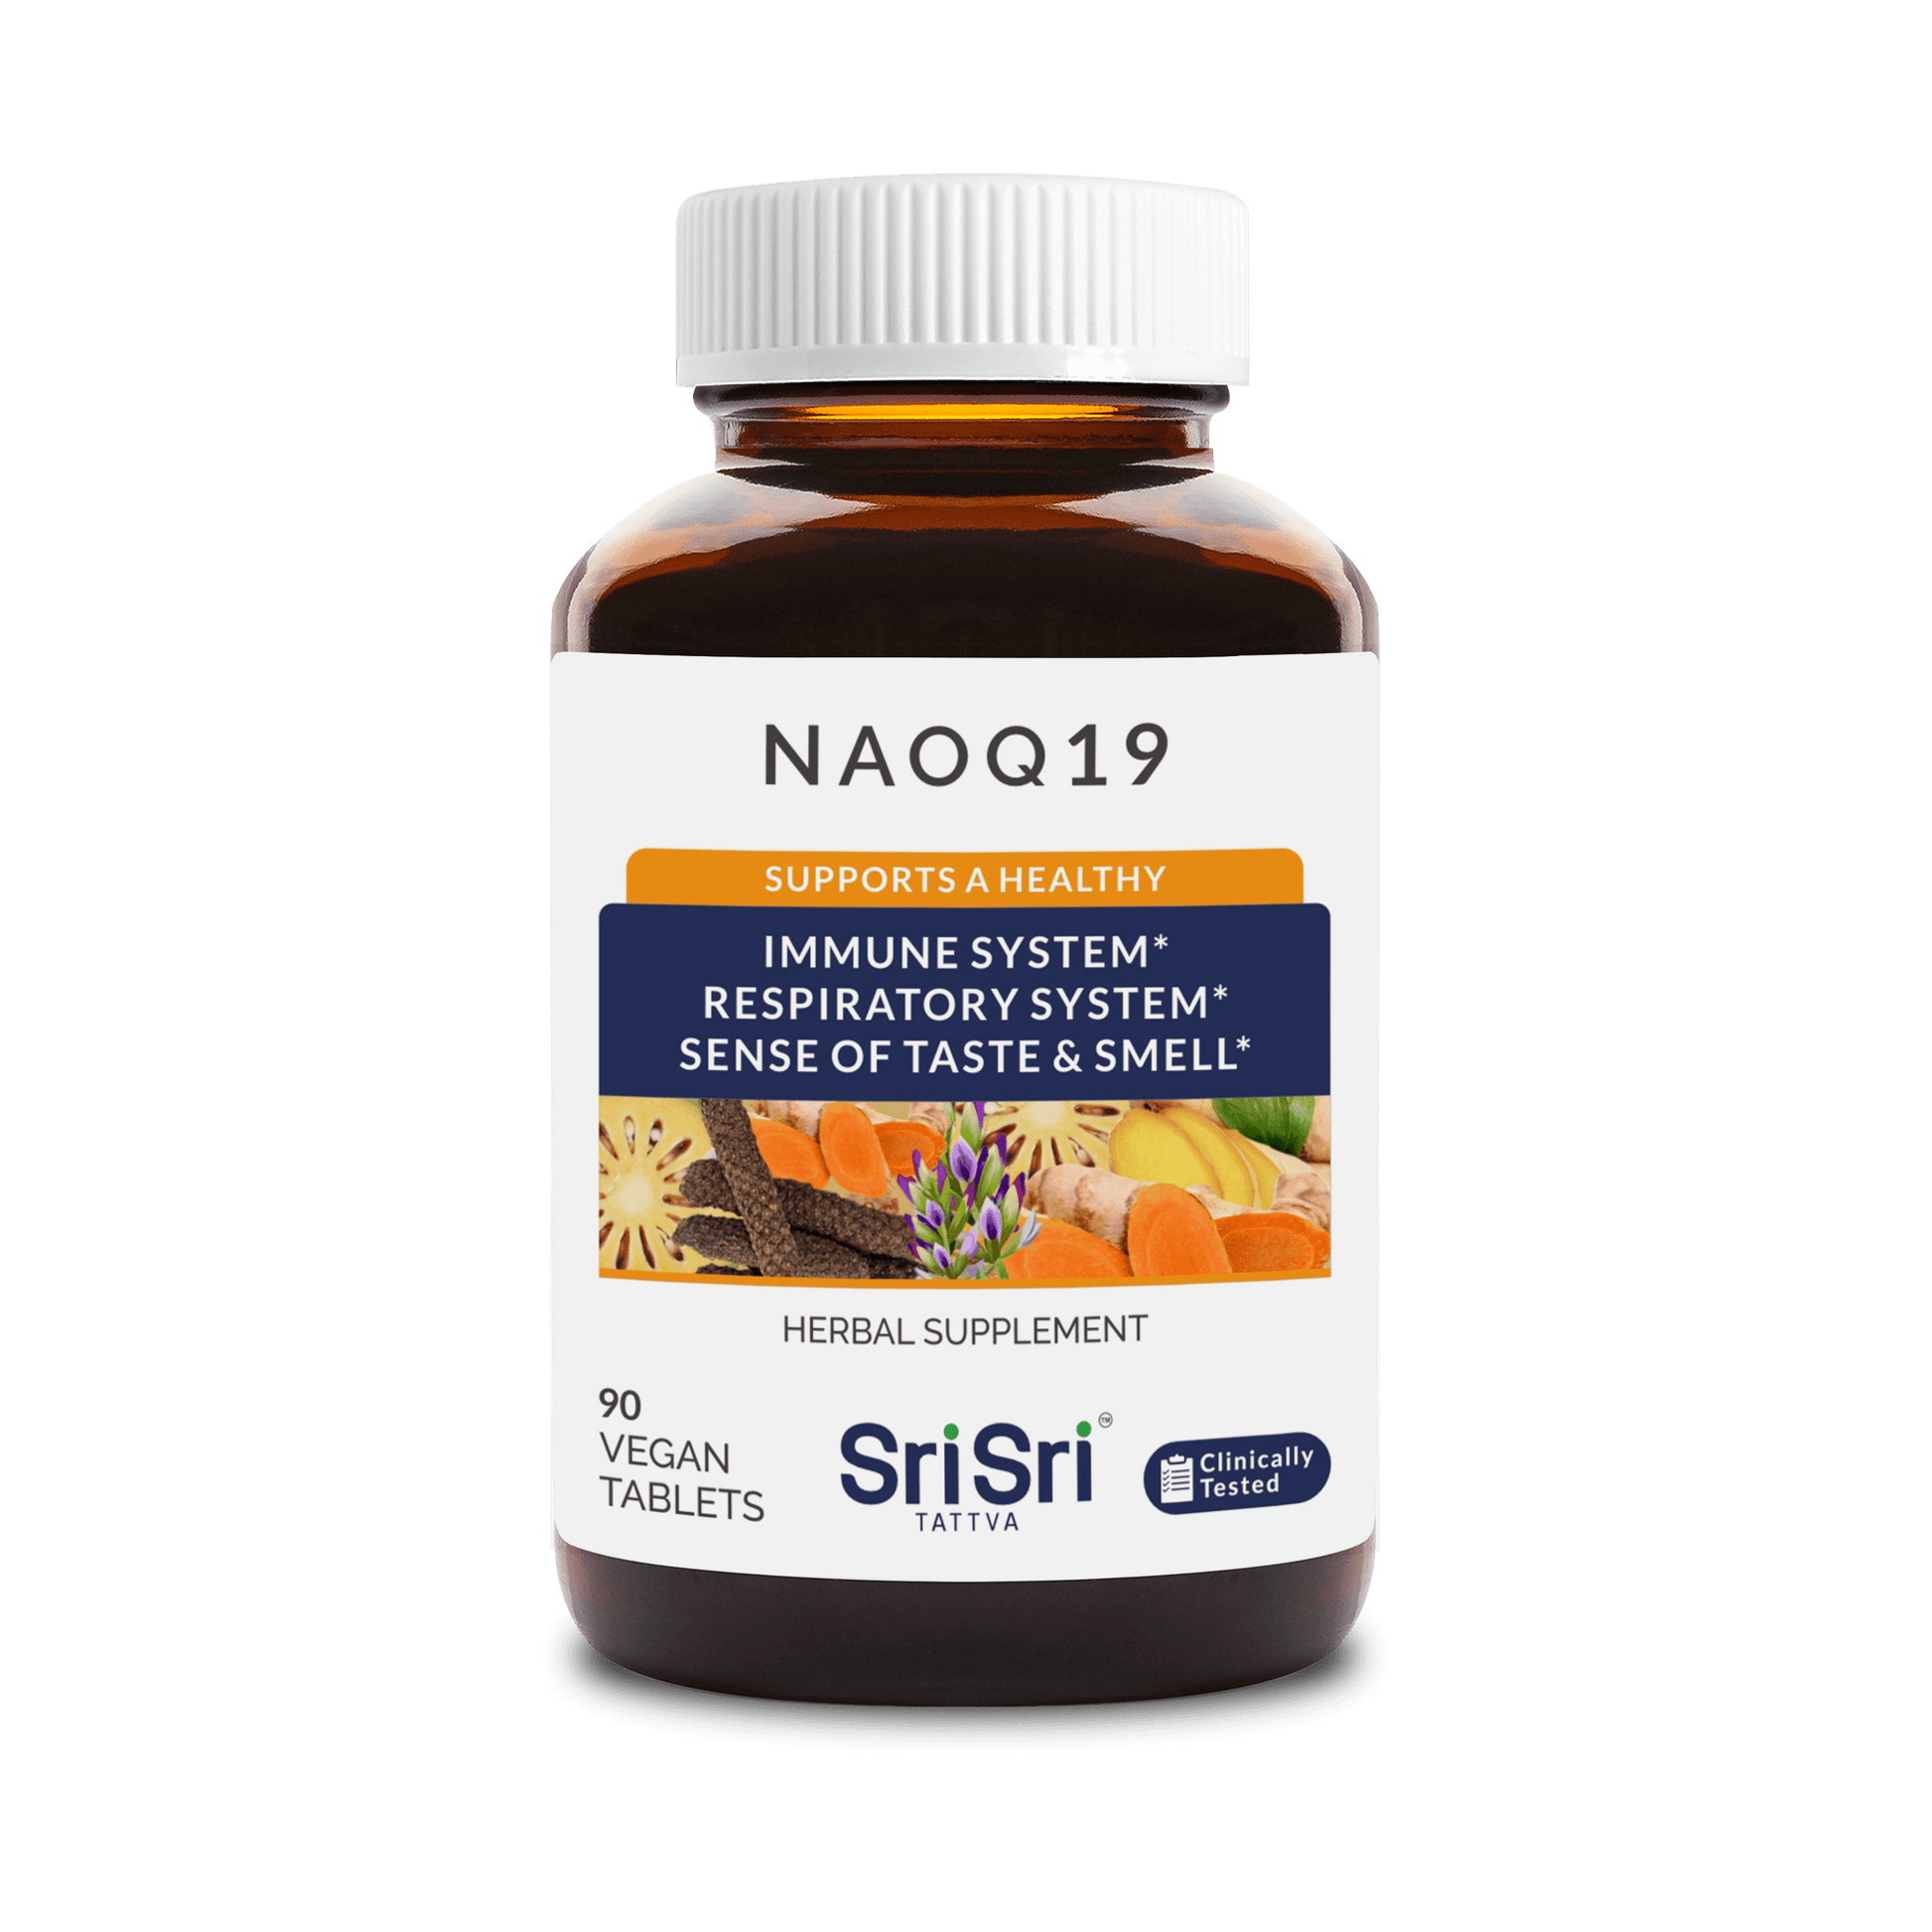 Sri Sri Tattva Herbs Pack of 1 NAOQ19 – Immunity Booster